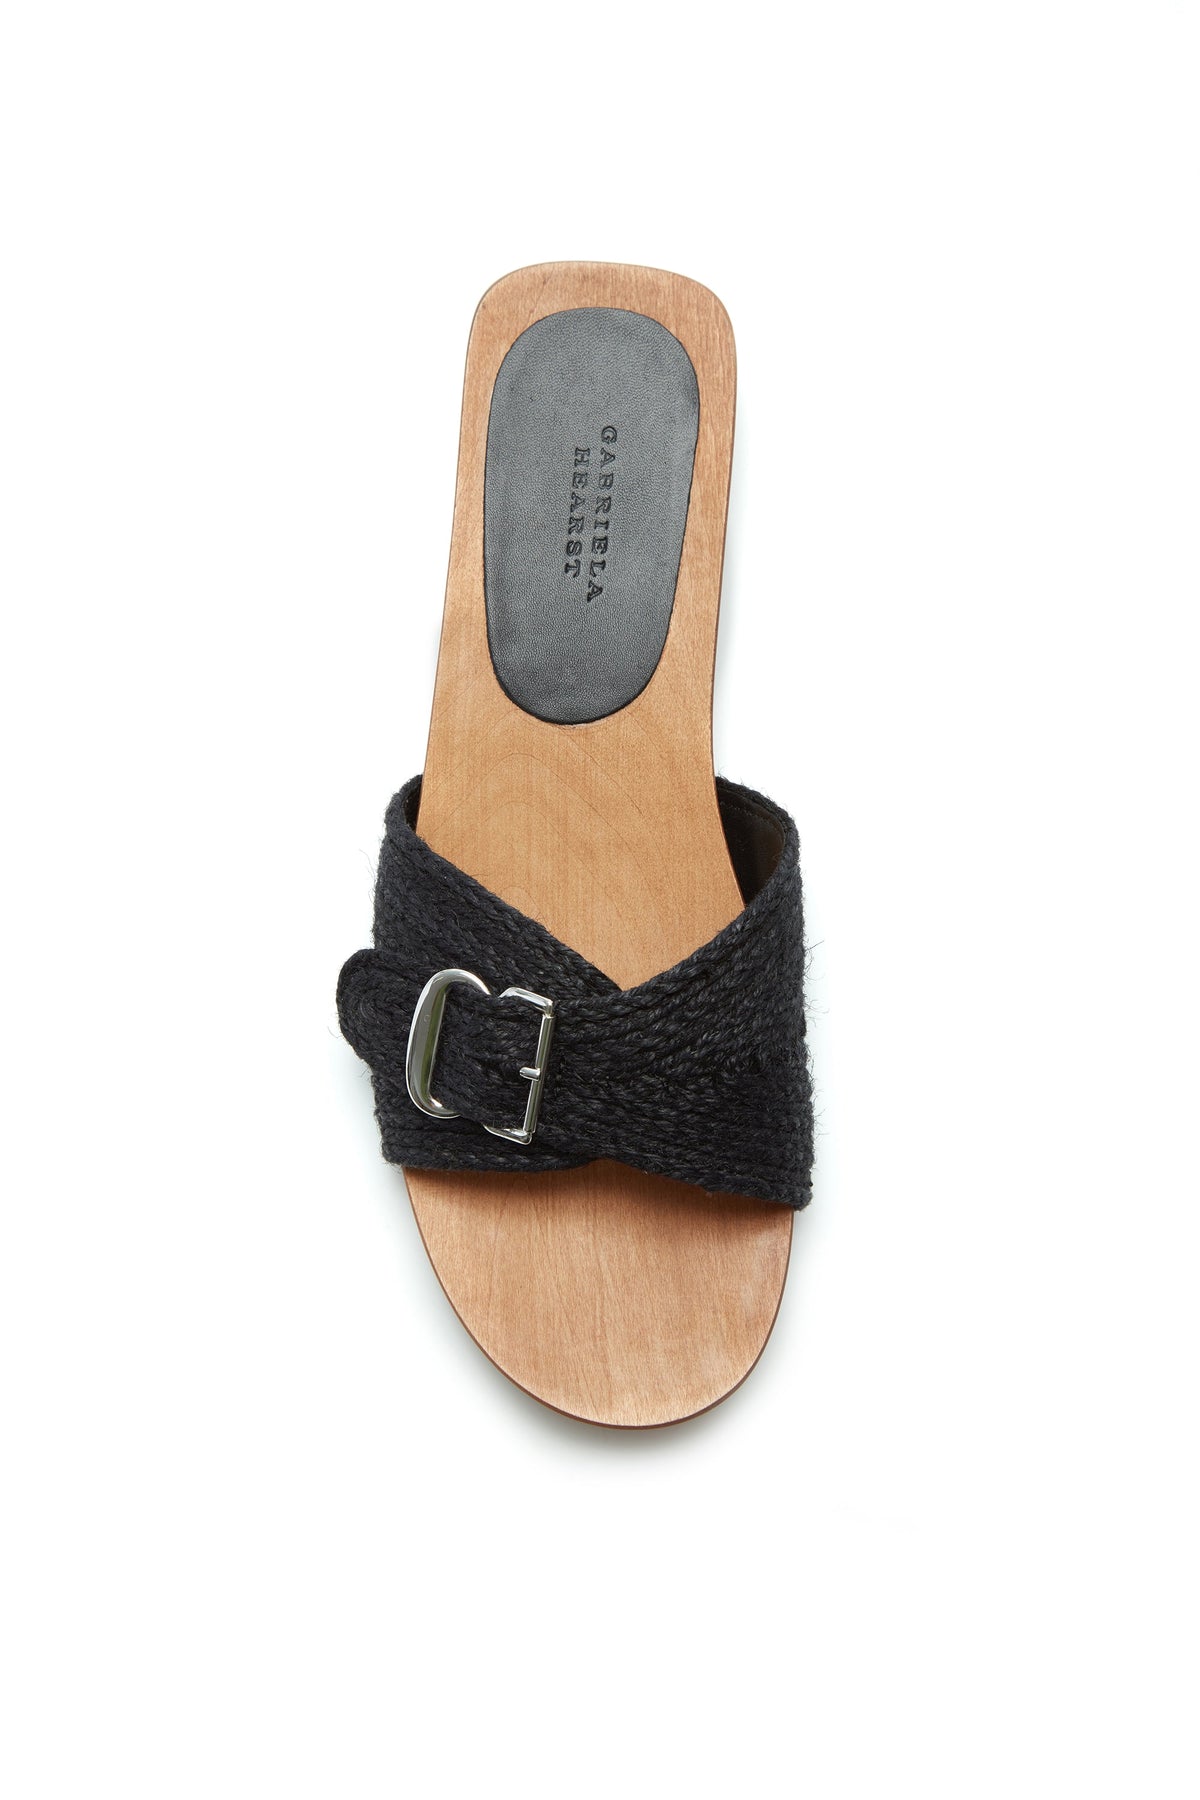 Clover Slide Sandal in Black Leather Jute